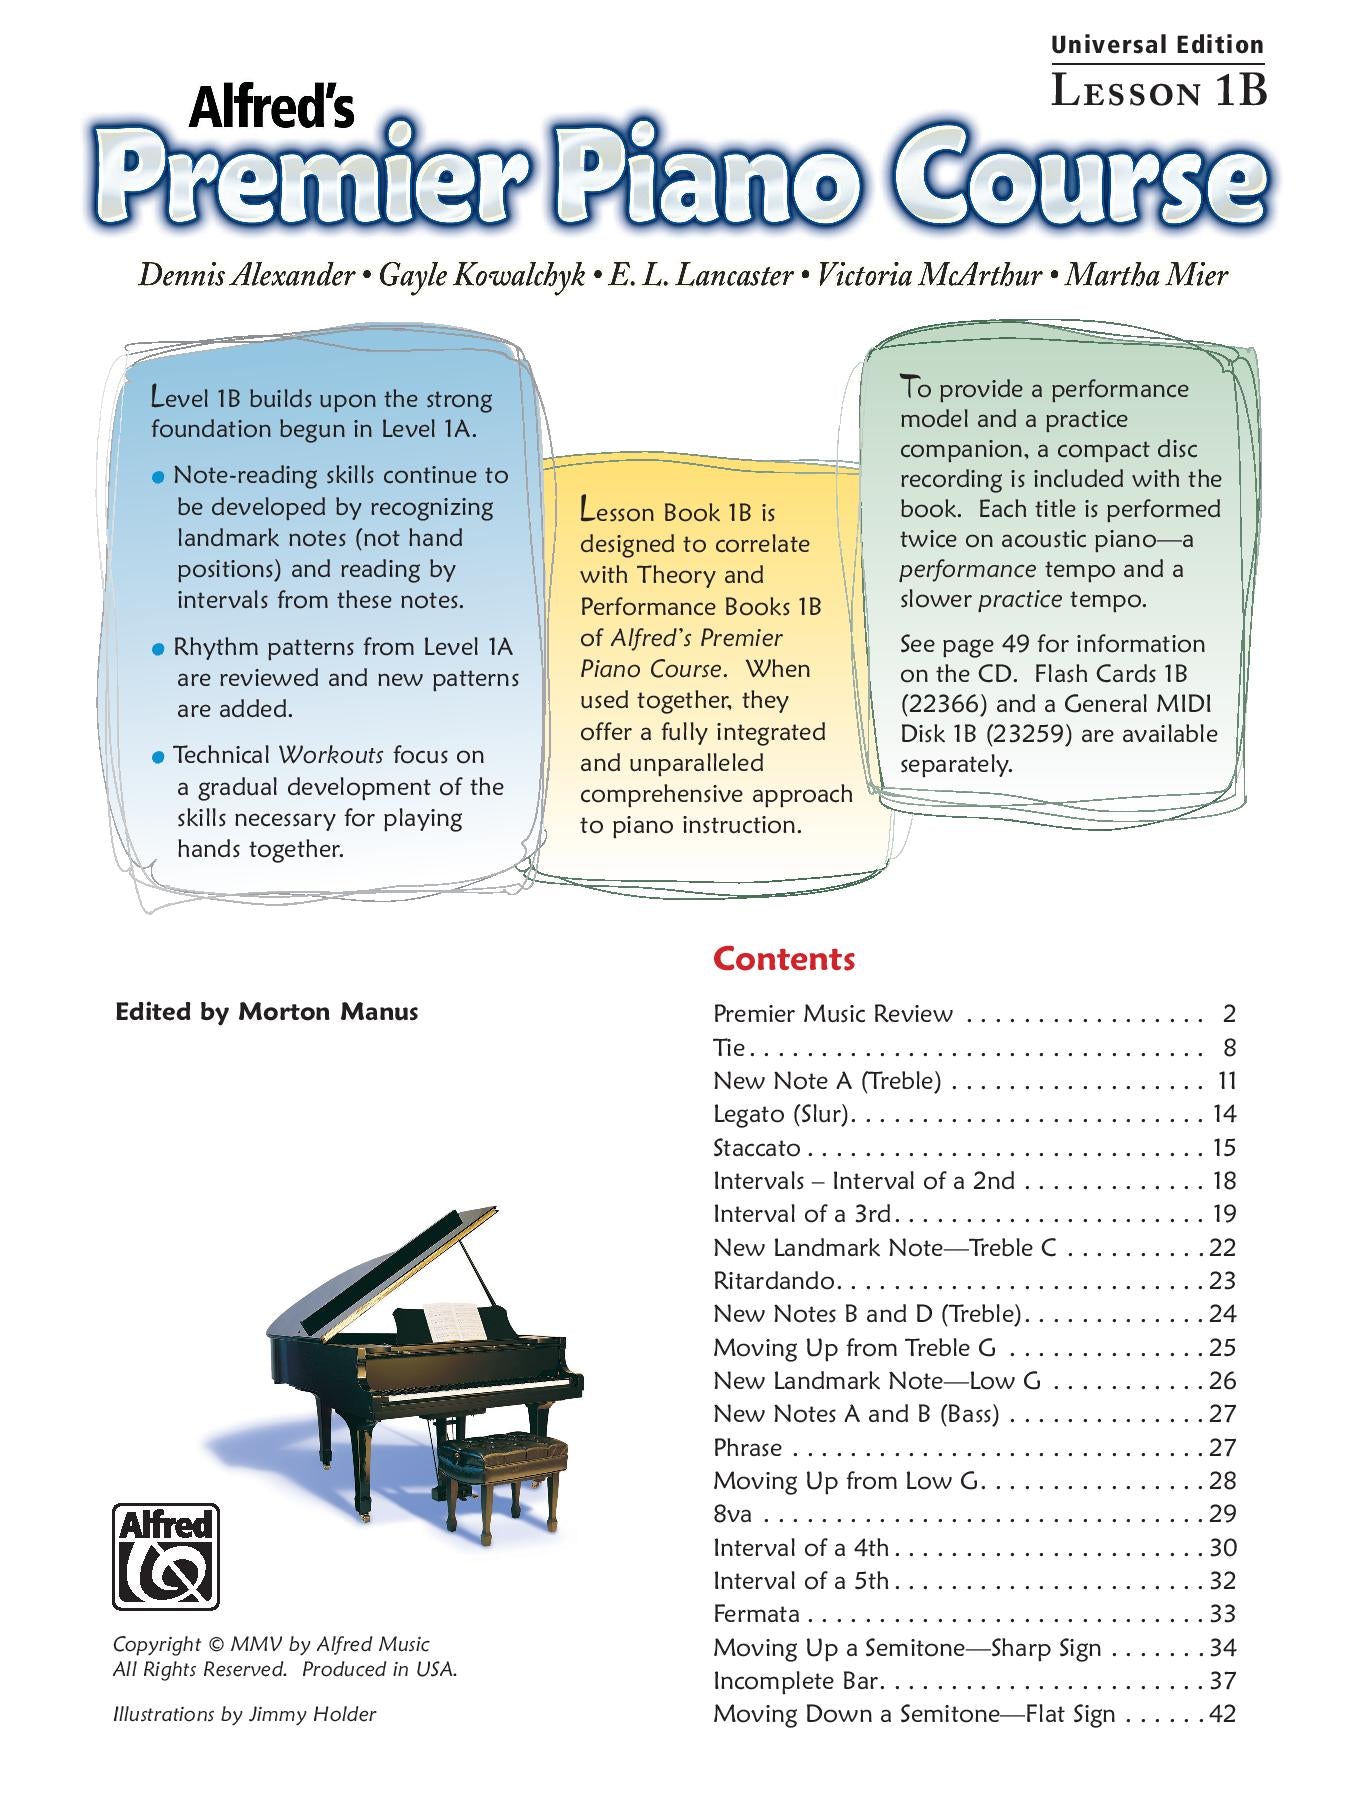 Alfred's Premier Piano Course, Lesson 1B